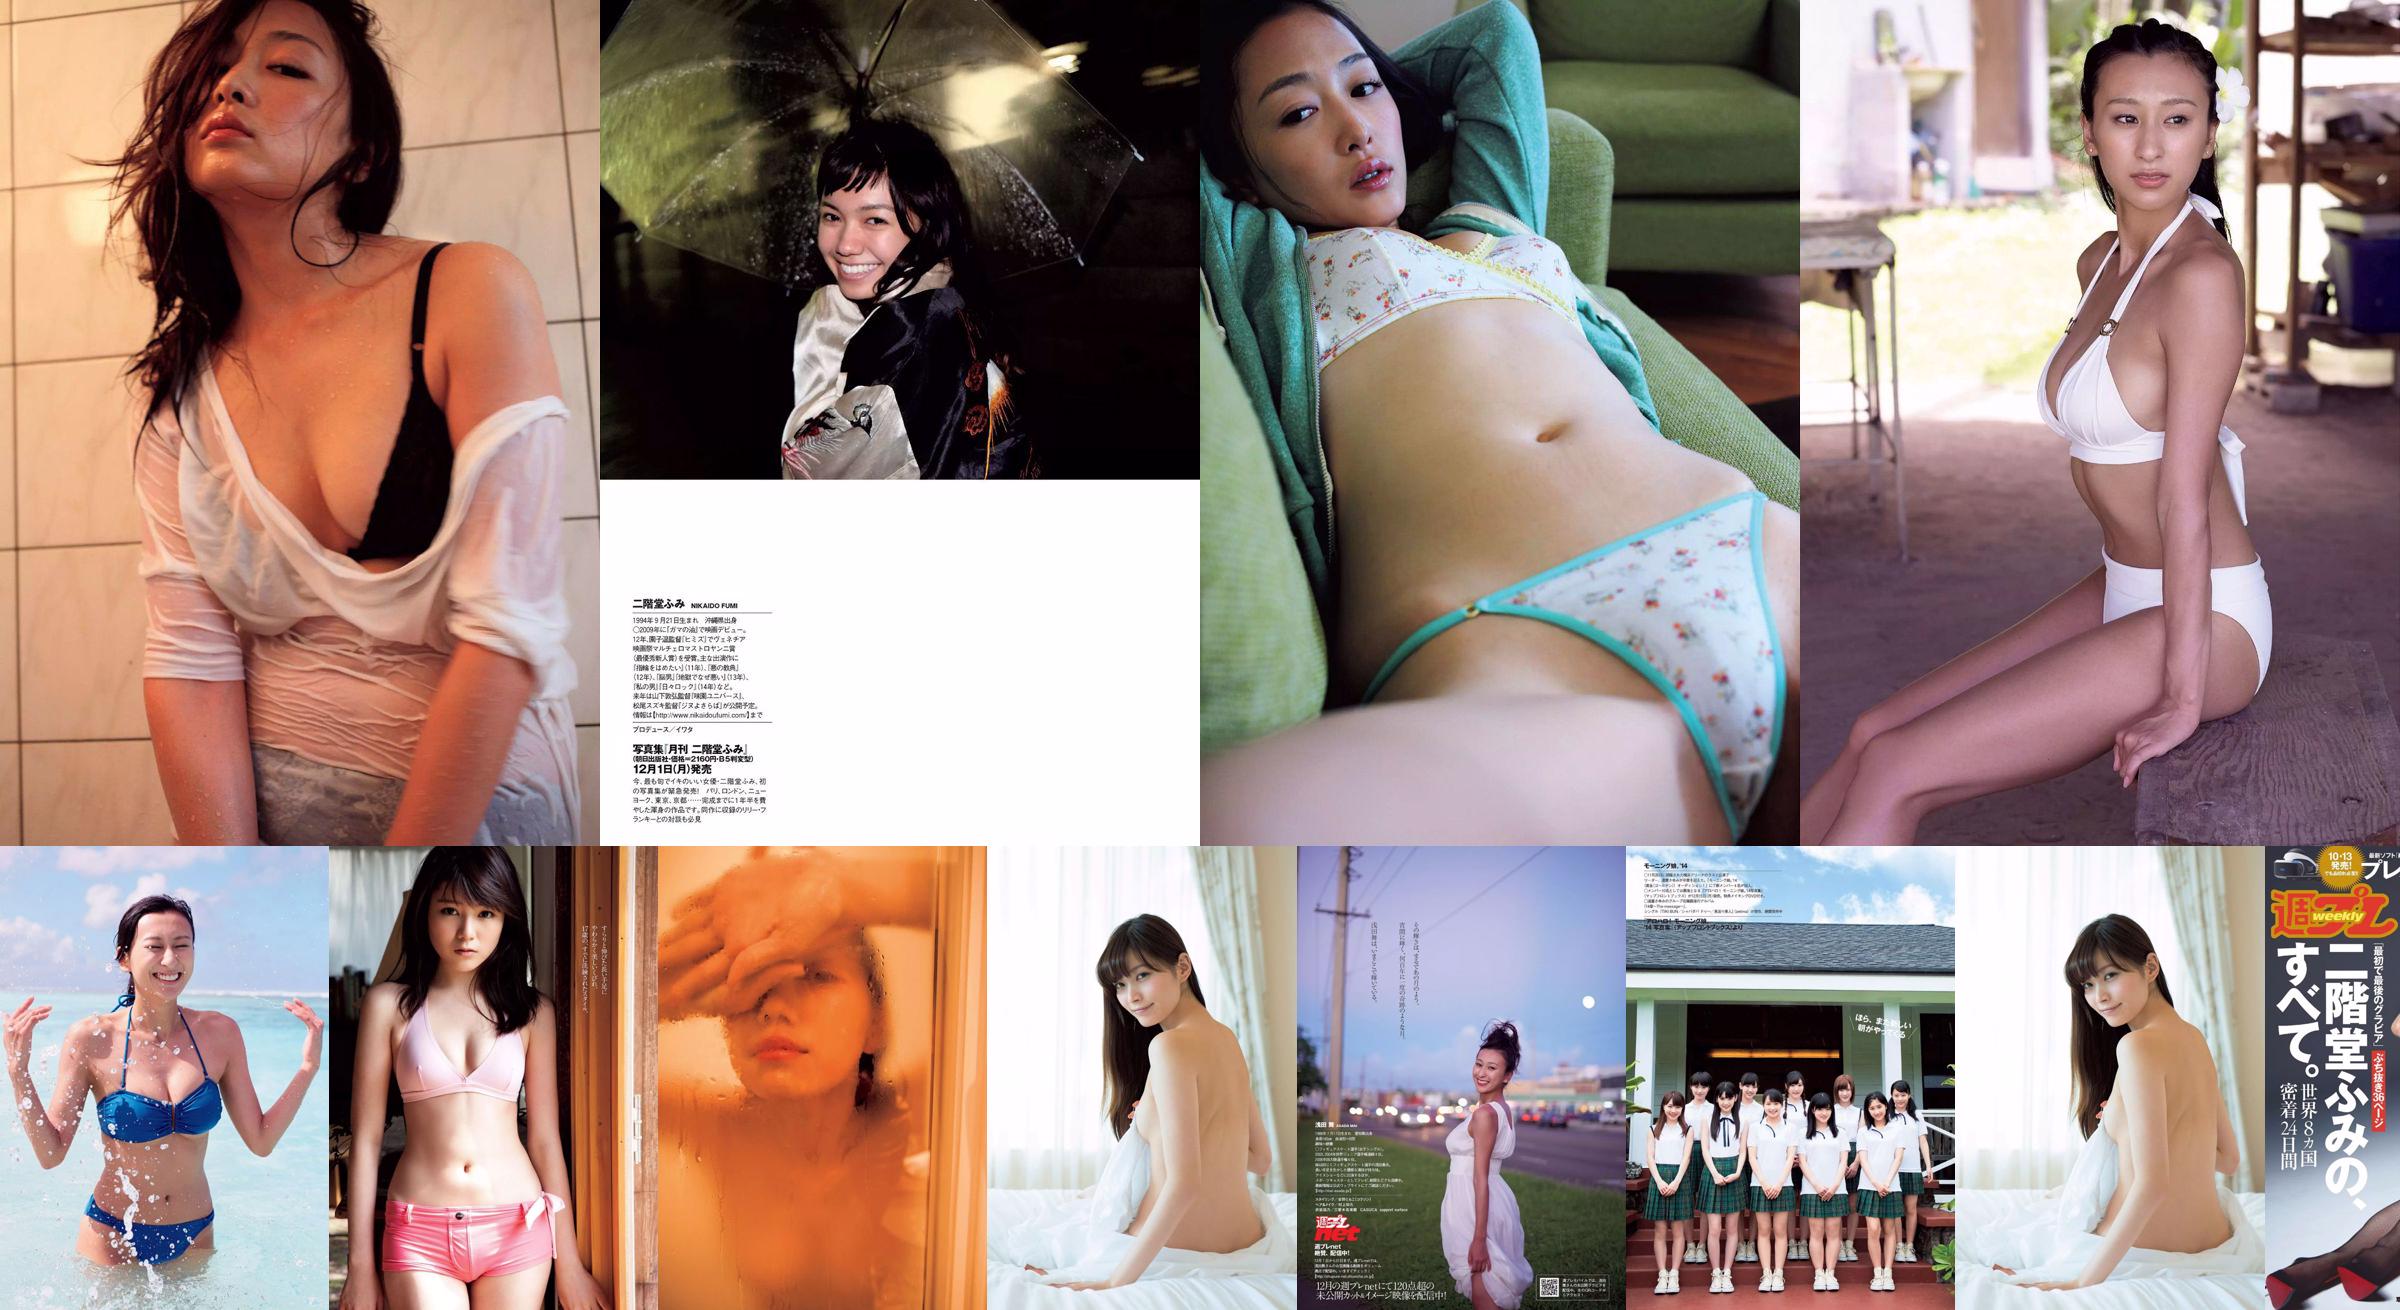 Fumi Nikaido [Wöchentlicher Playboy] 2016 No.43 Photo Magazine No.850607 Seite 3